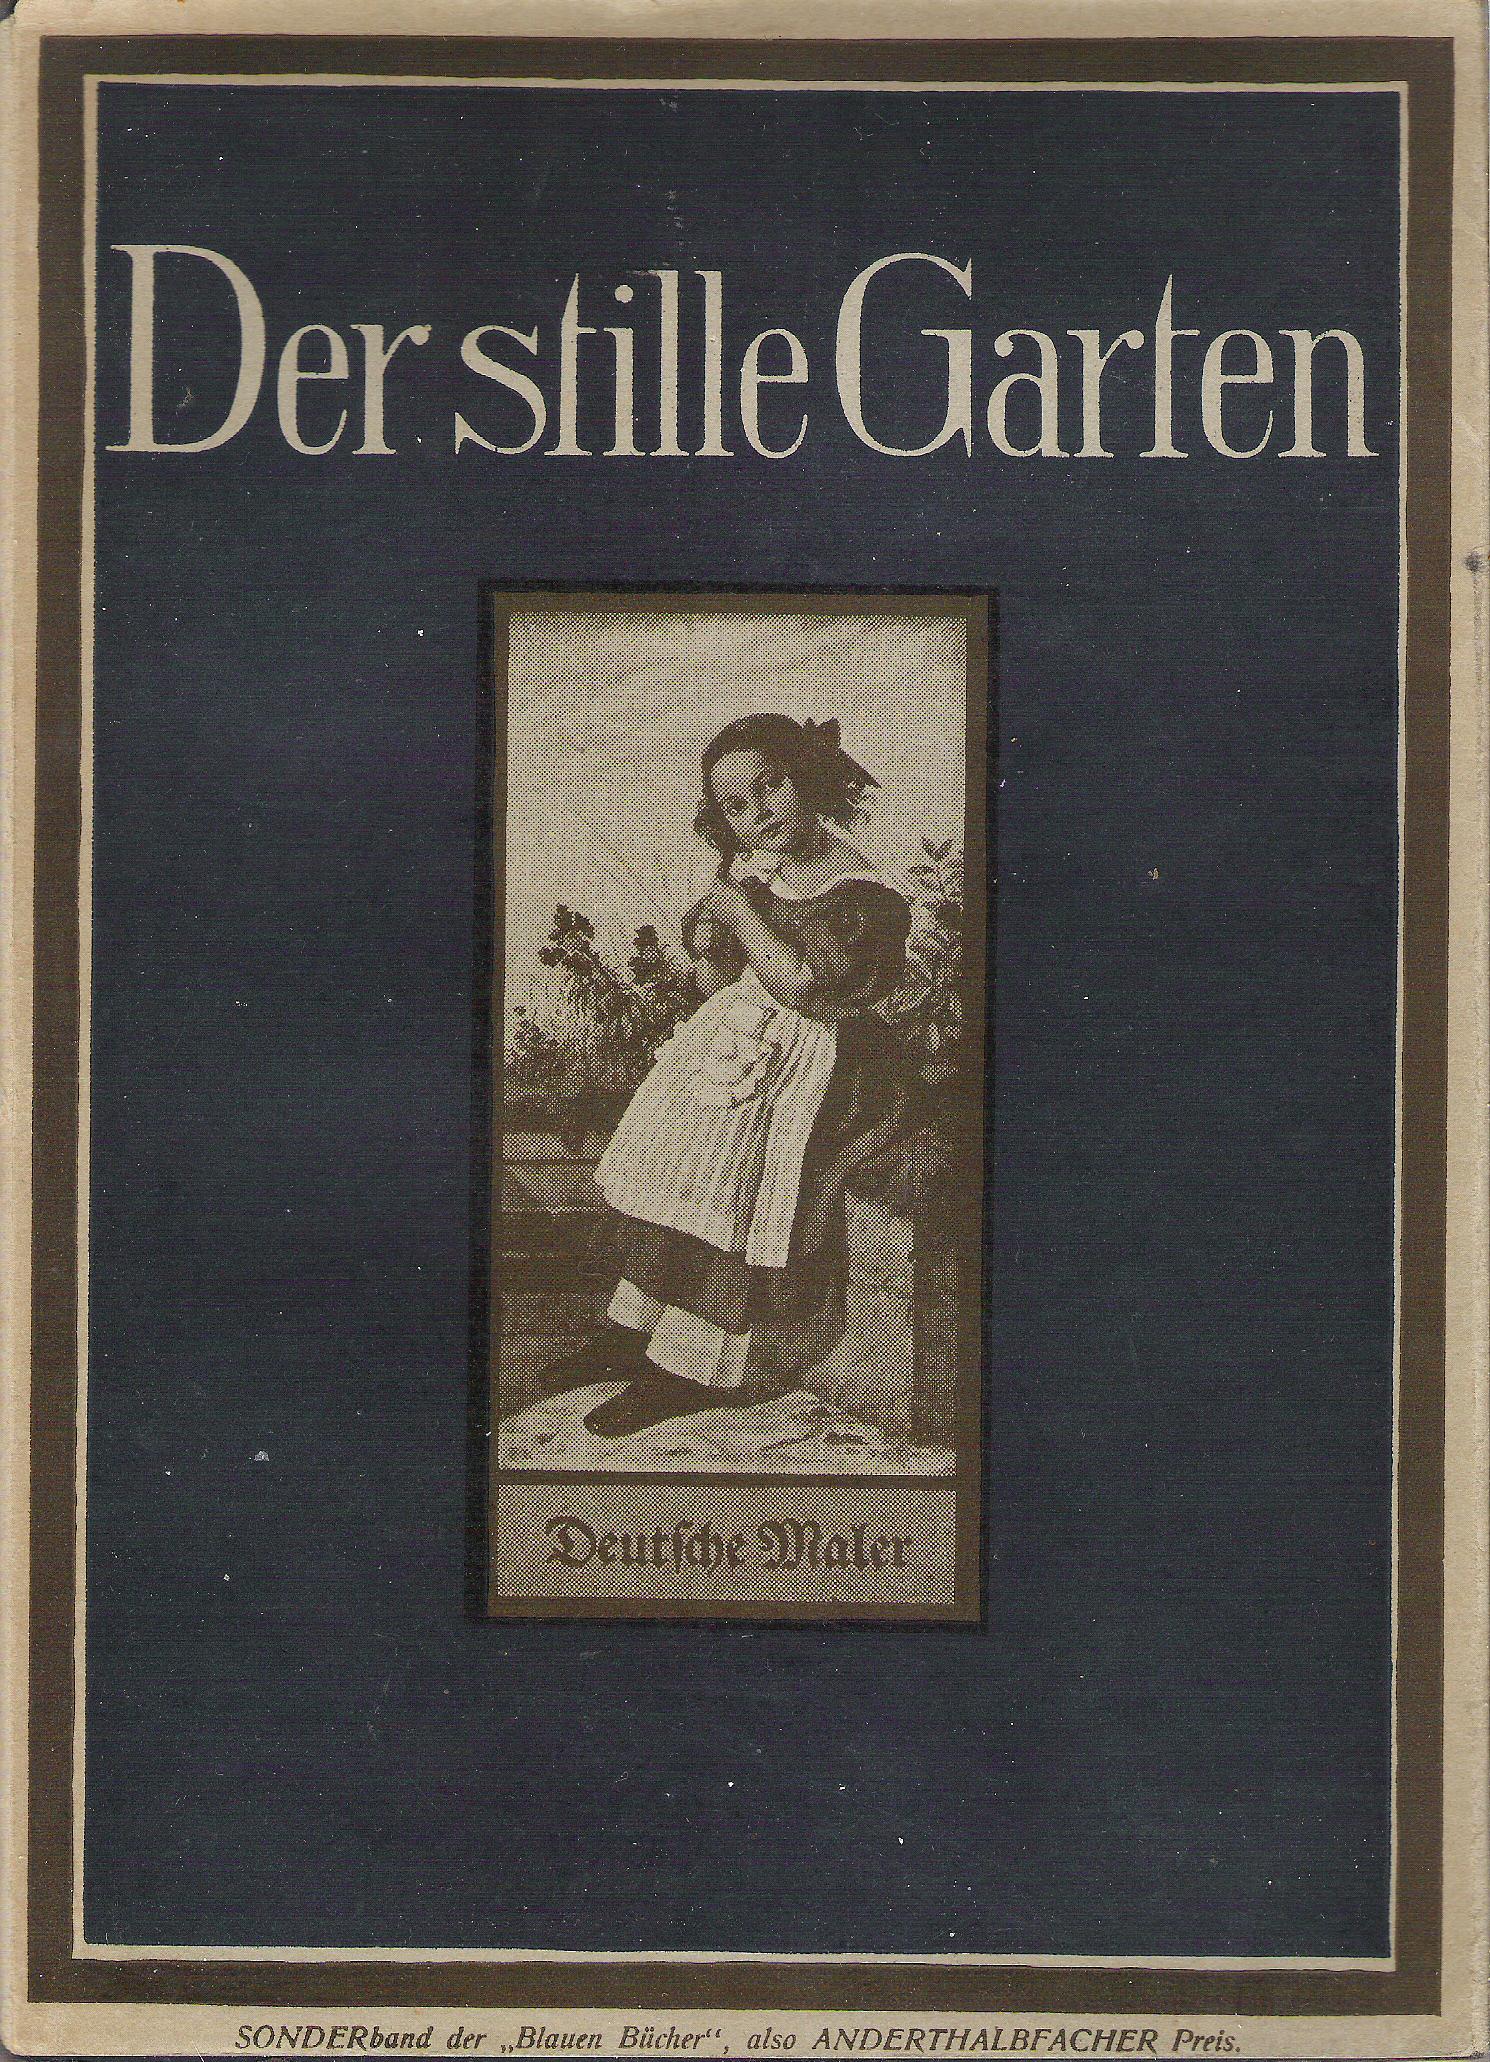   Der Stille Garten. Deutsche Maler Des Ersten Und Zweiten Drittels Des 19. Jahrhunderts 